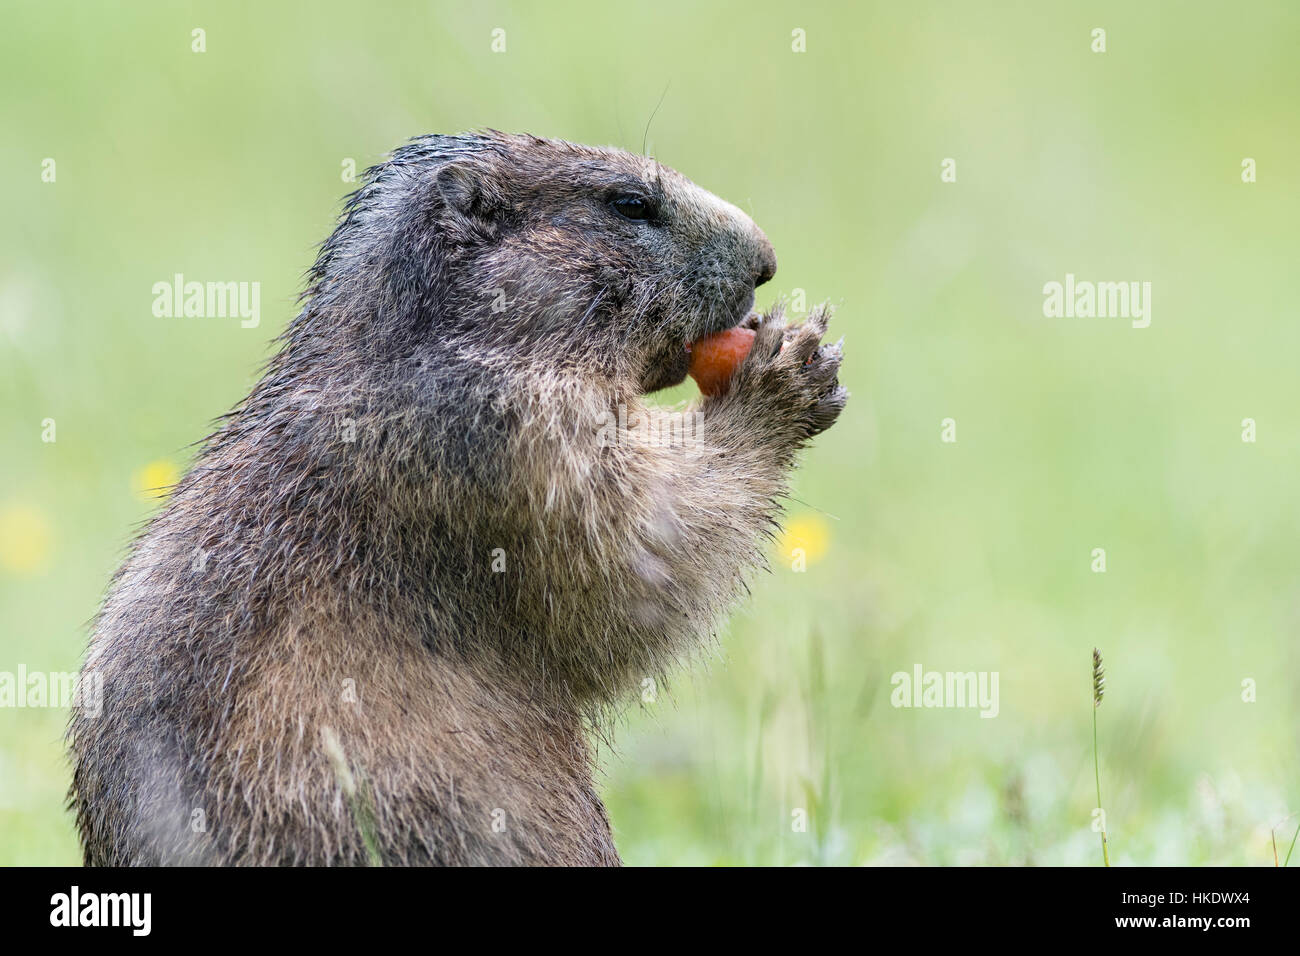 Marmot (Marmota) eating a carrot, Dachstein, Styria, Austria Stock Photo